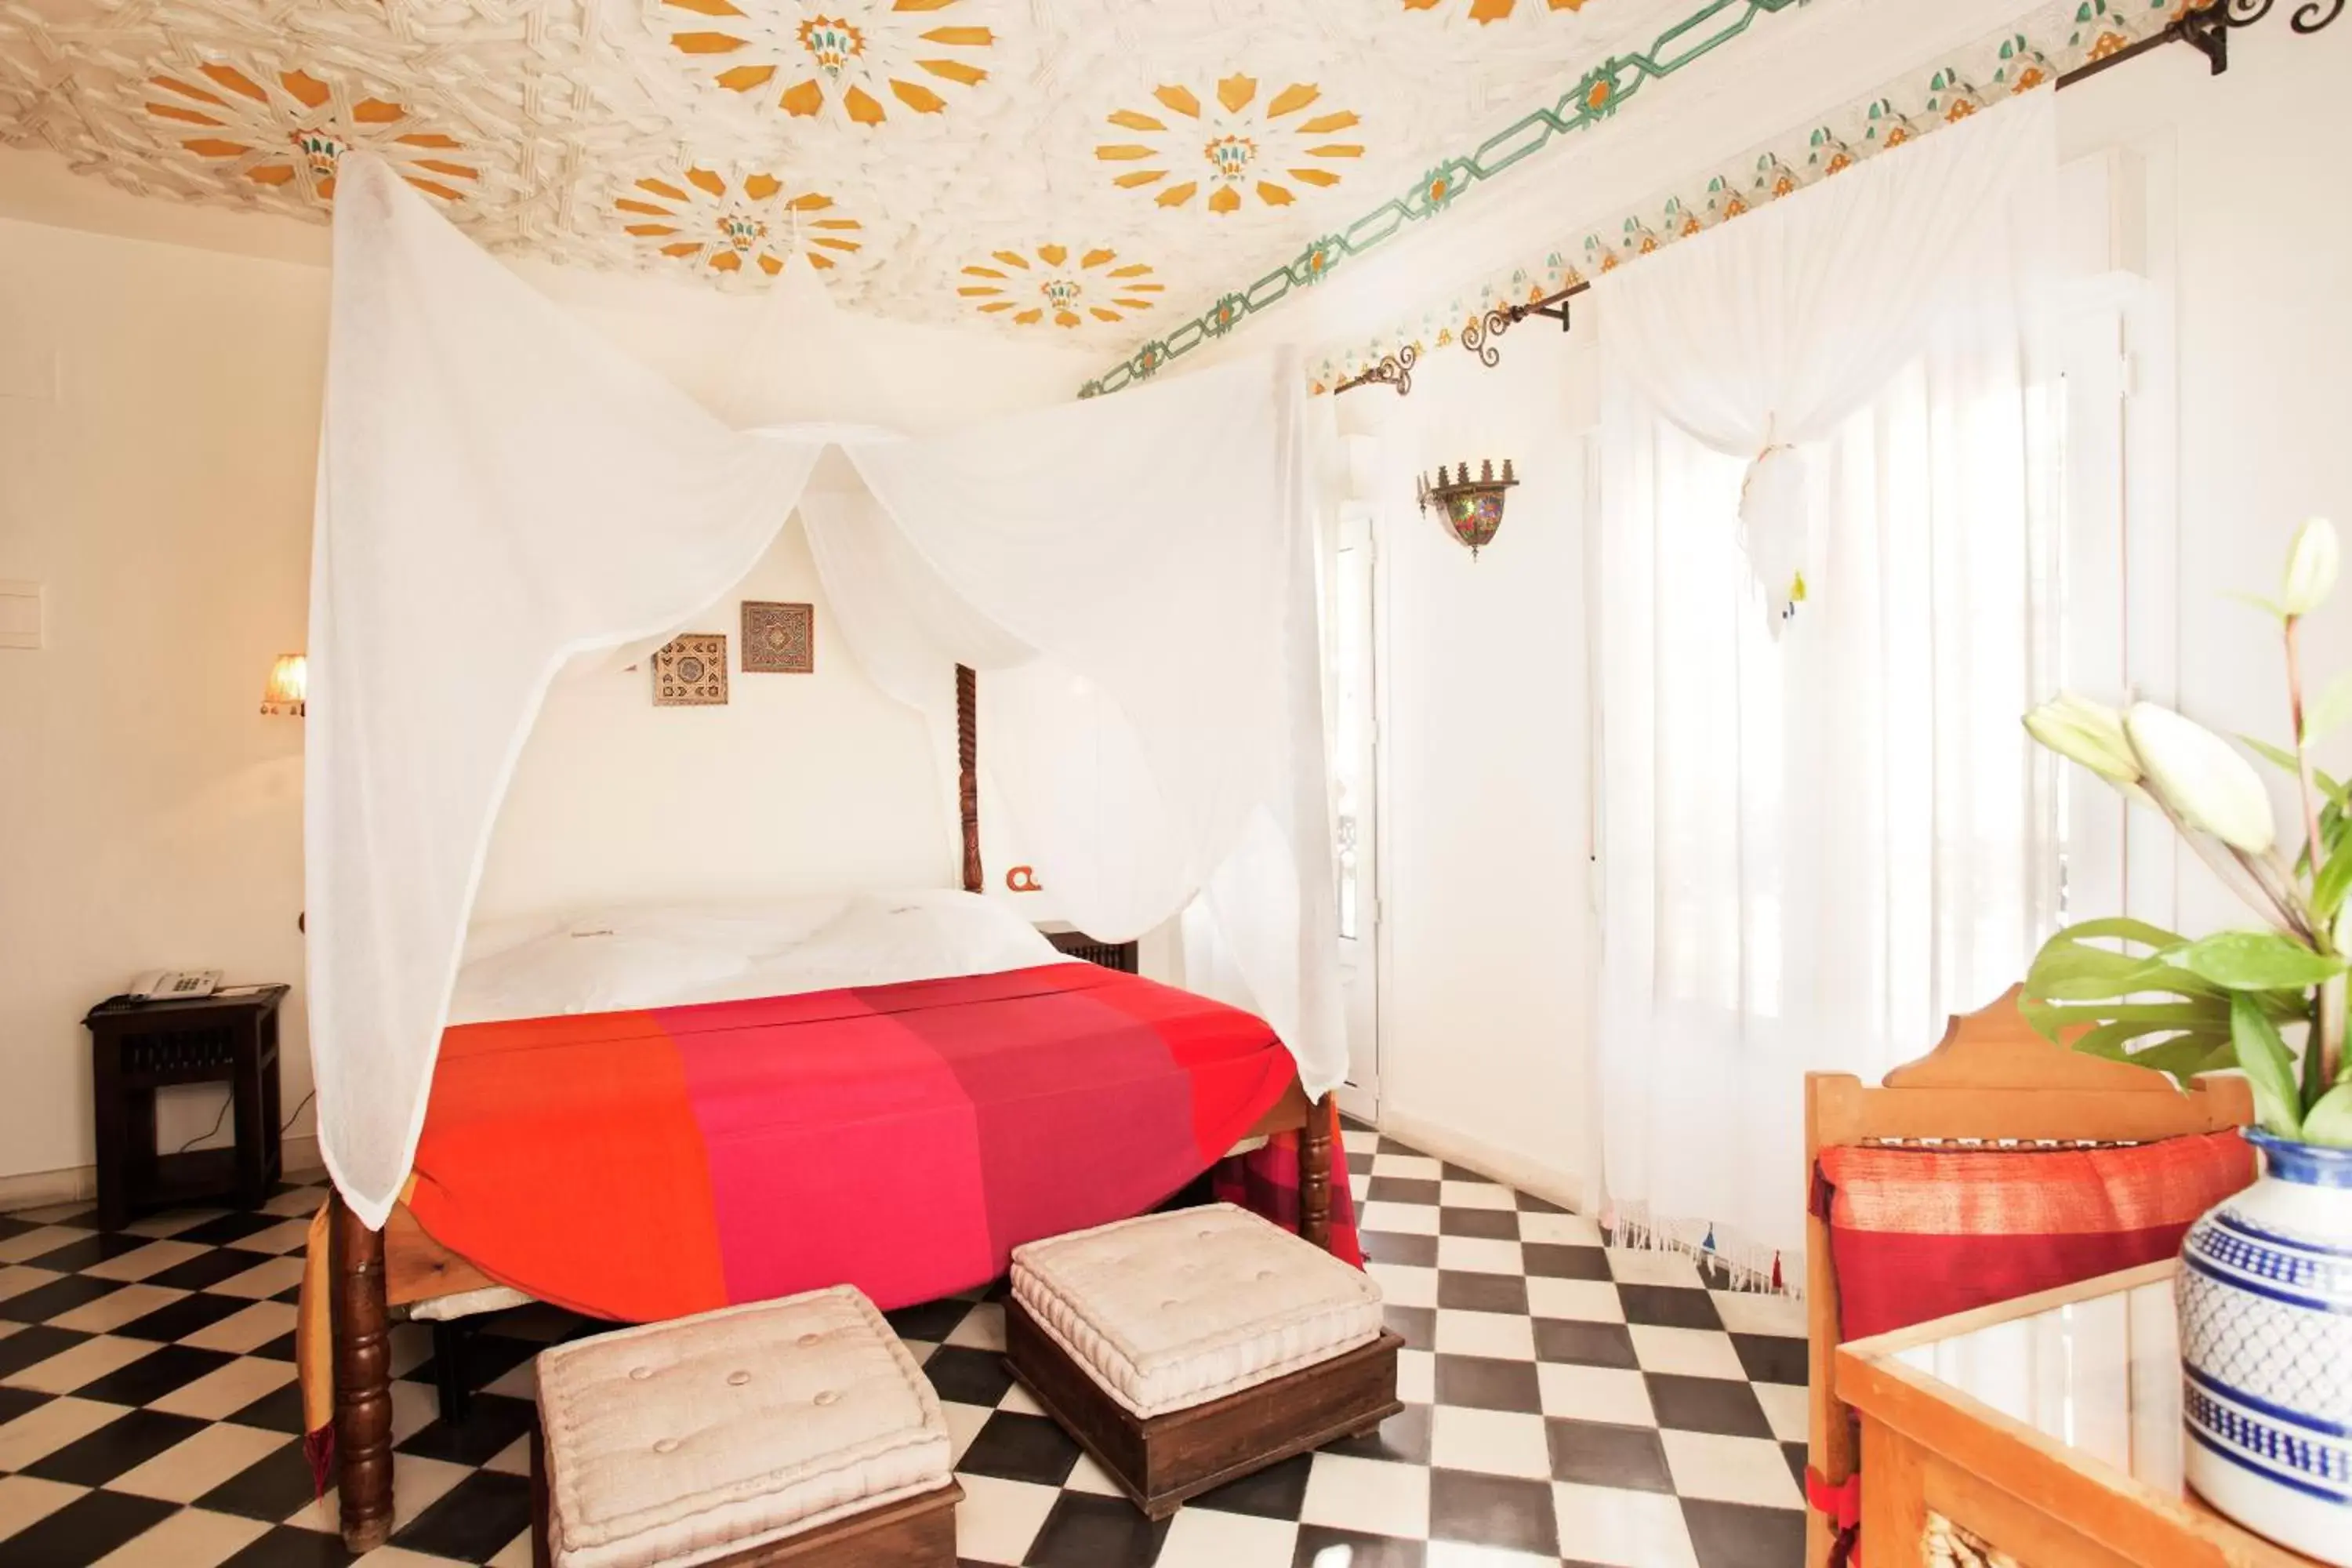 Photo of the whole room, Bed in Alcoba del Rey de Sevilla